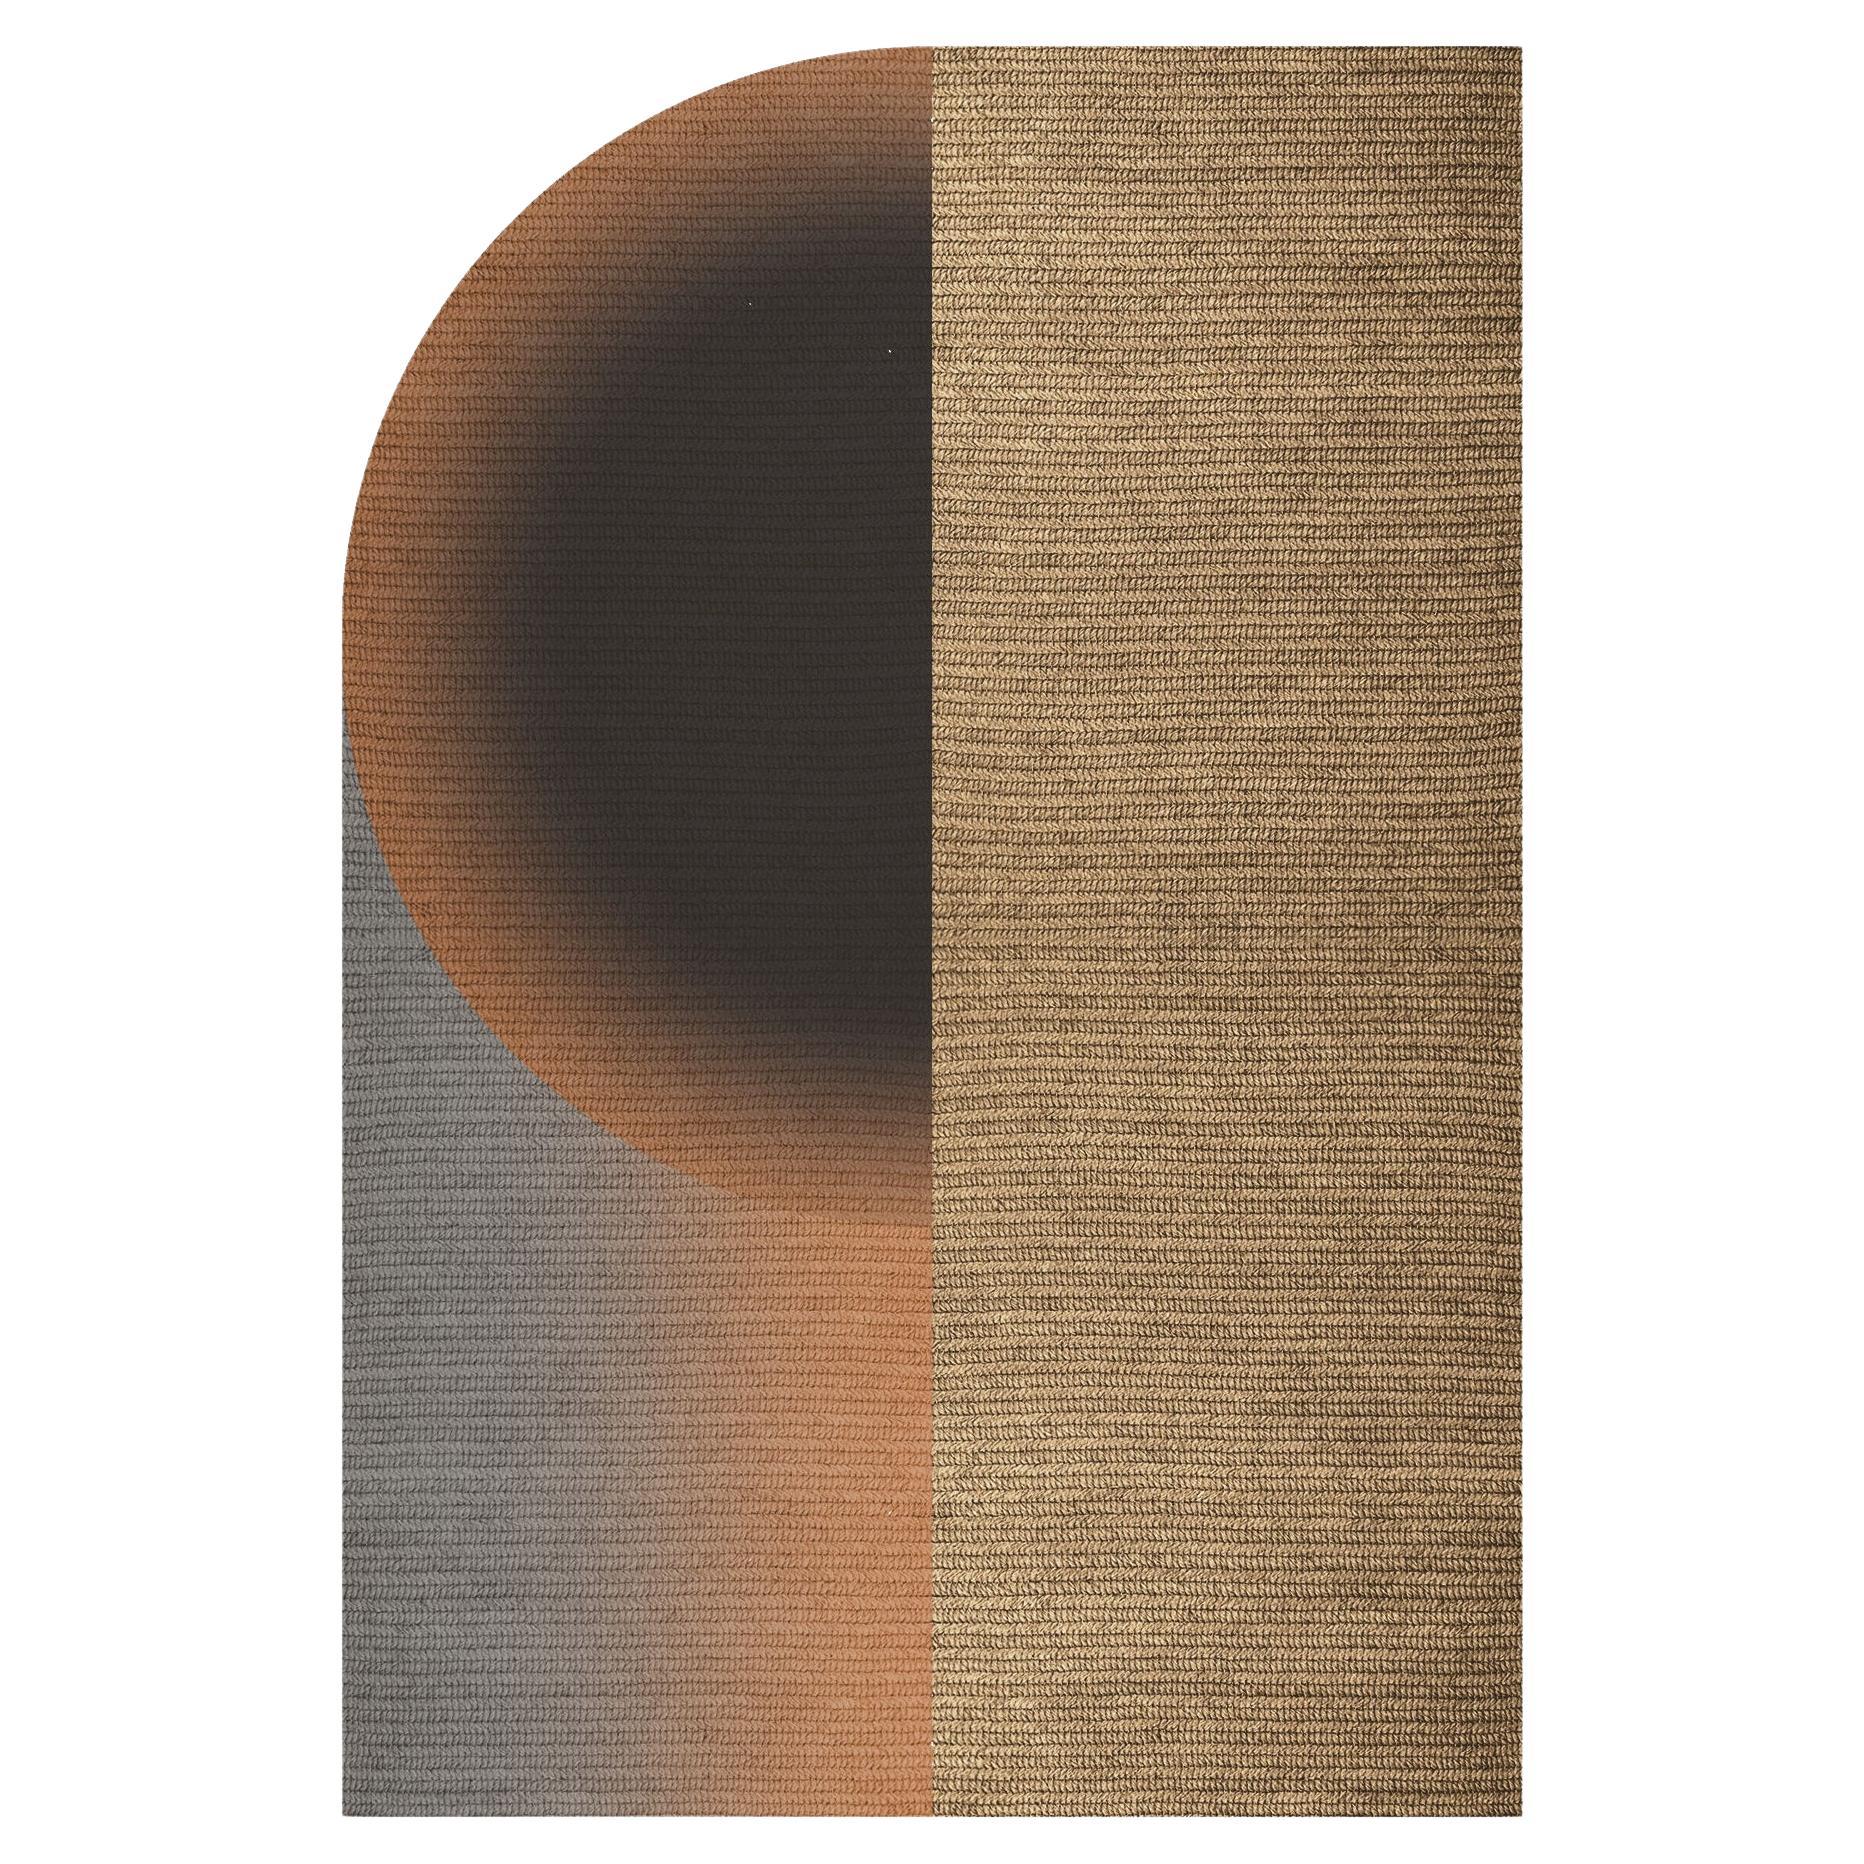 „Glow“ Teppich aus Abaca, Farbe „Mahogany“, 200x300cm, von Claire Vos für Musett Design